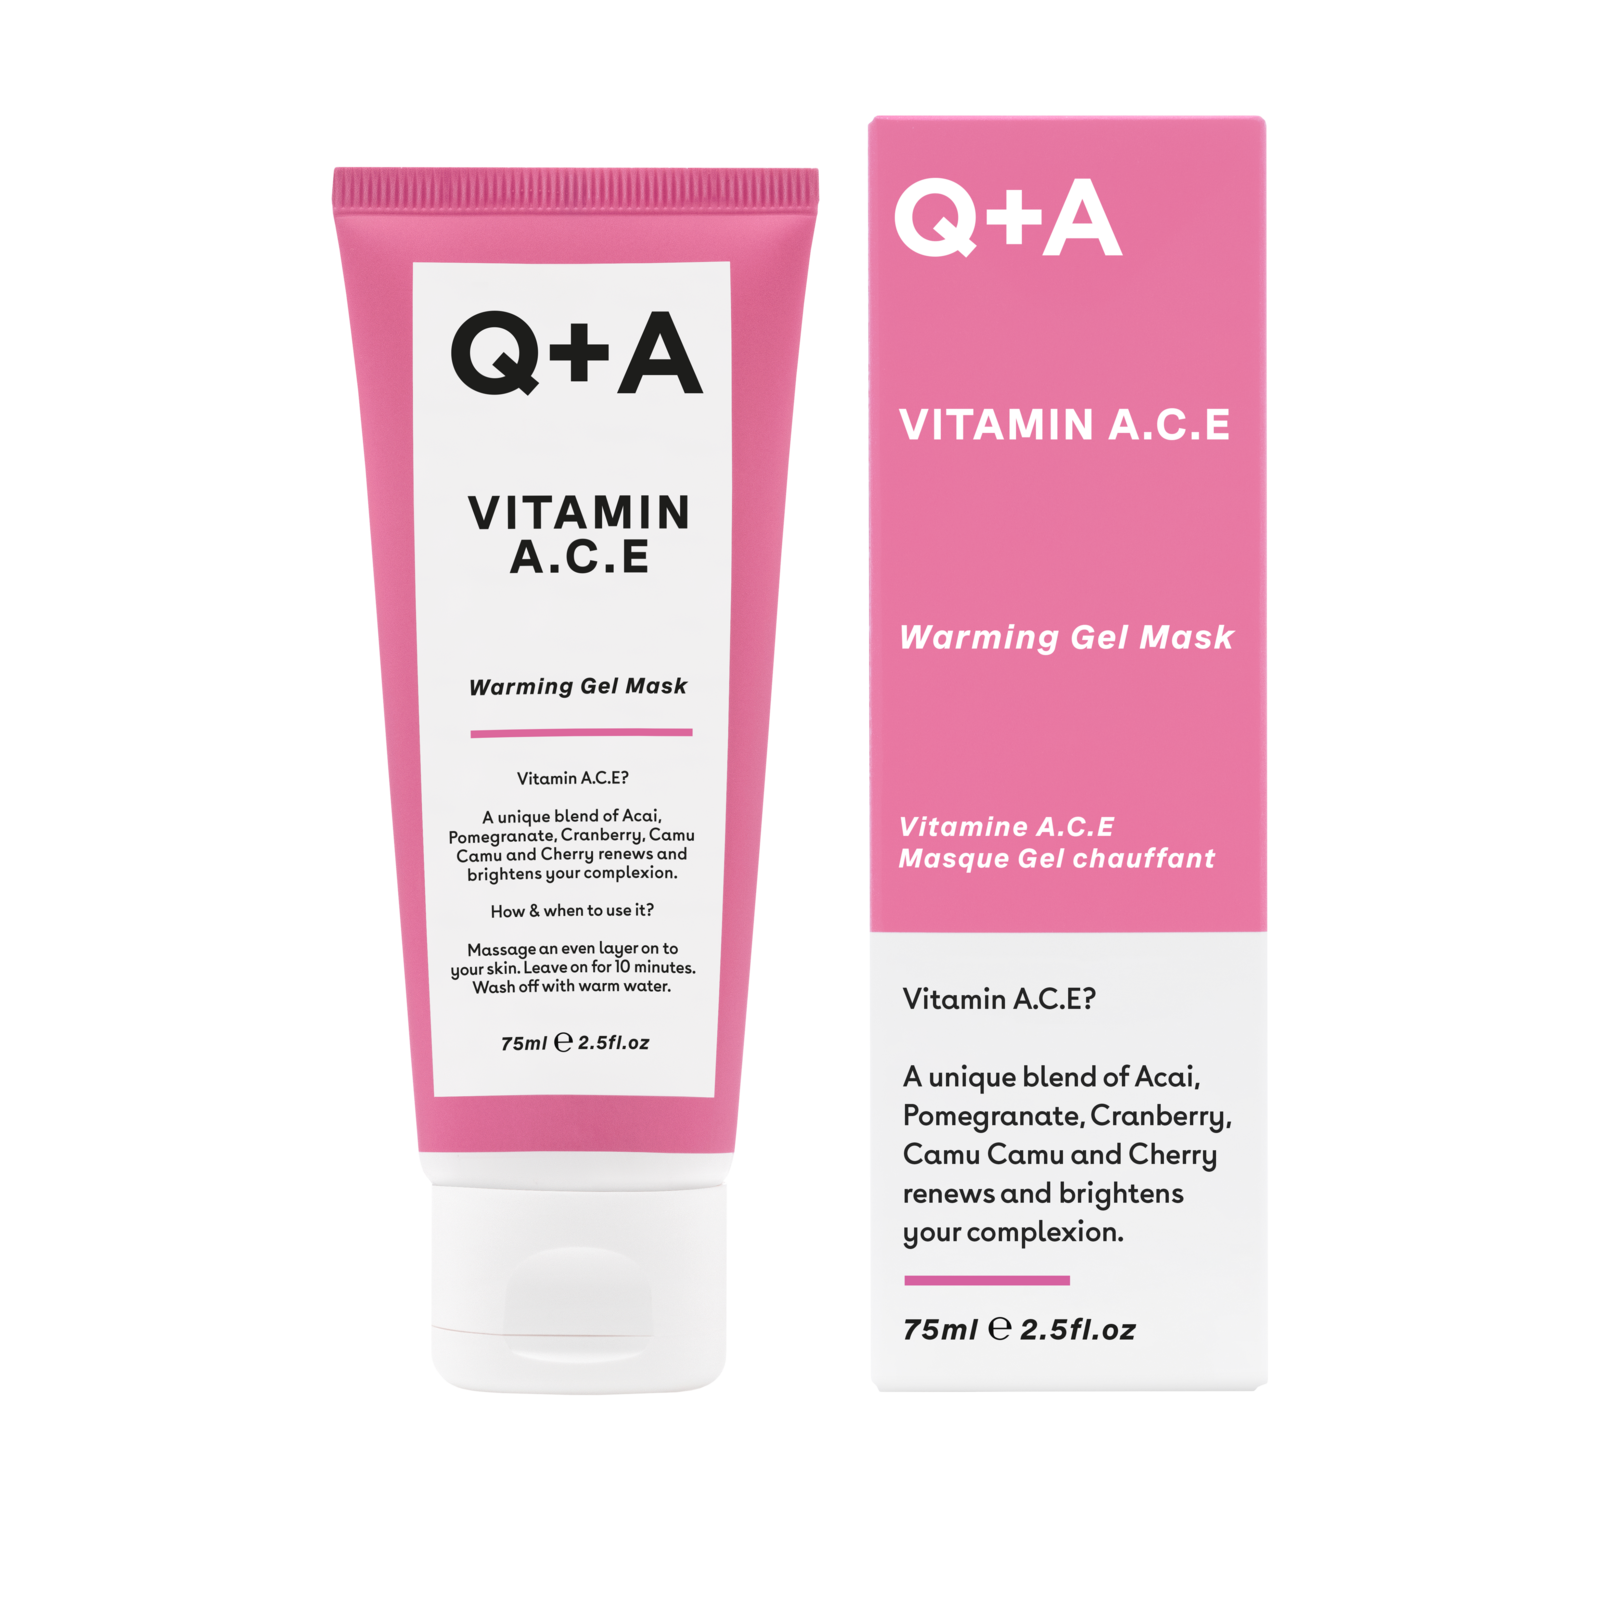 Q+A Vitamin A.C.E Warming Face Mask